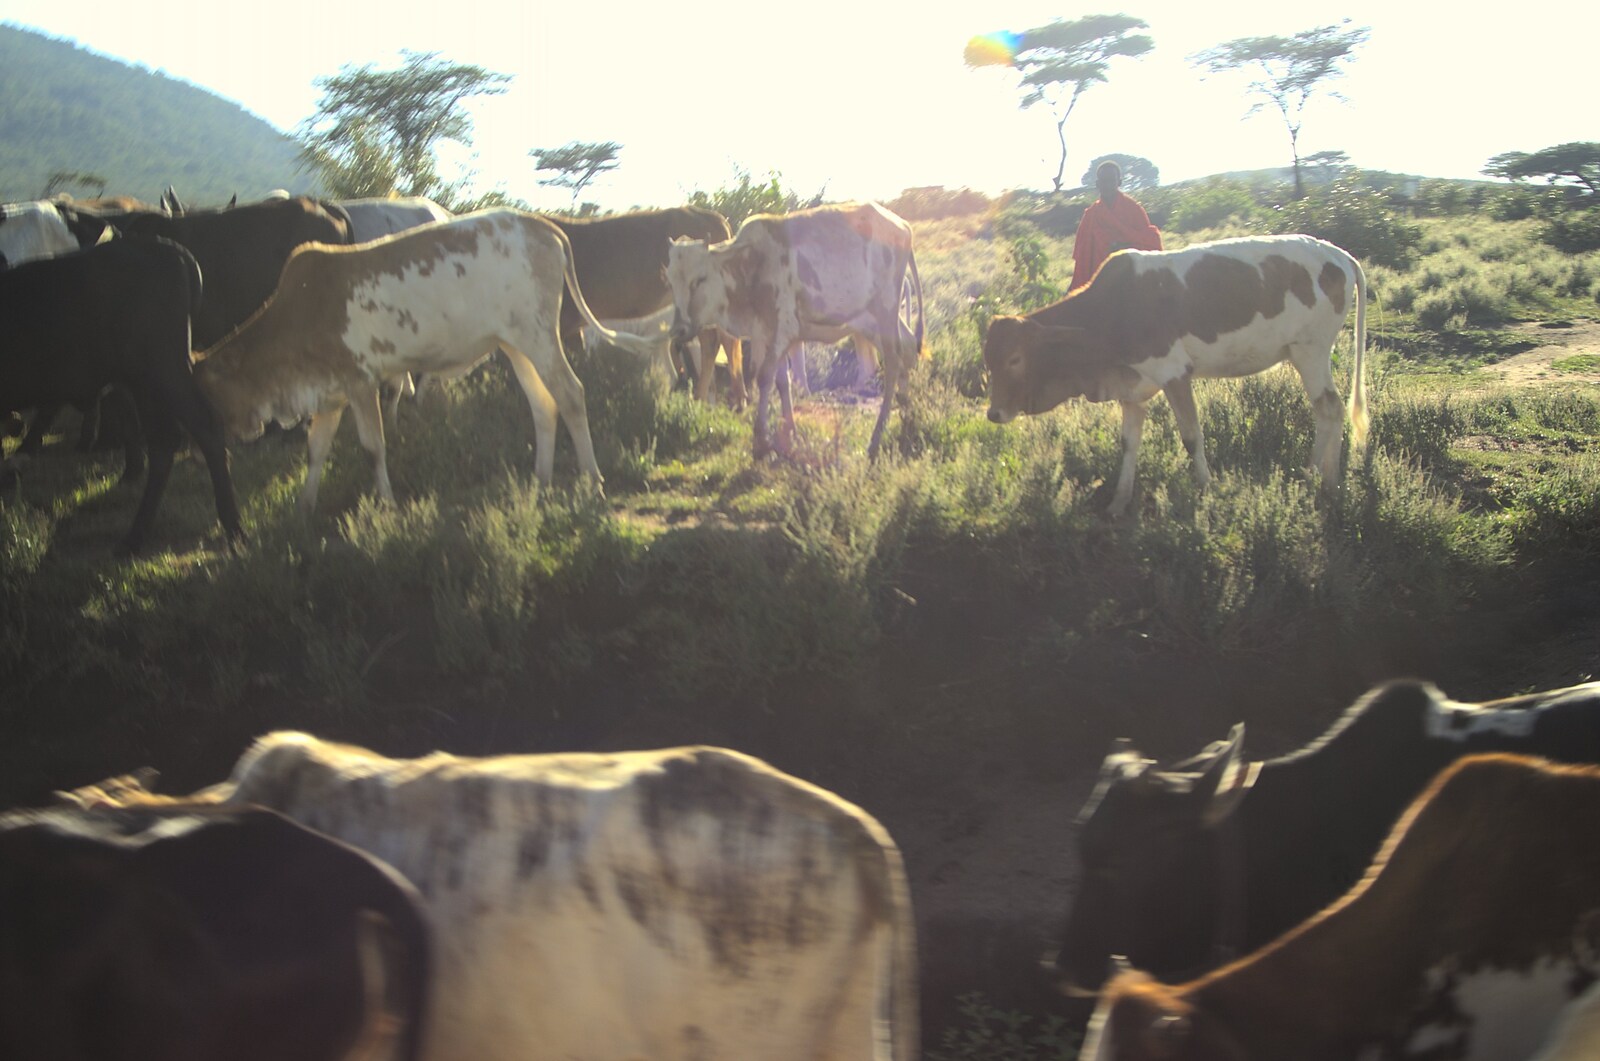 Next morning, cows mill around from Maasai Mara Safari and a Maasai Village, Ololaimutia, Kenya - 5th November 2010